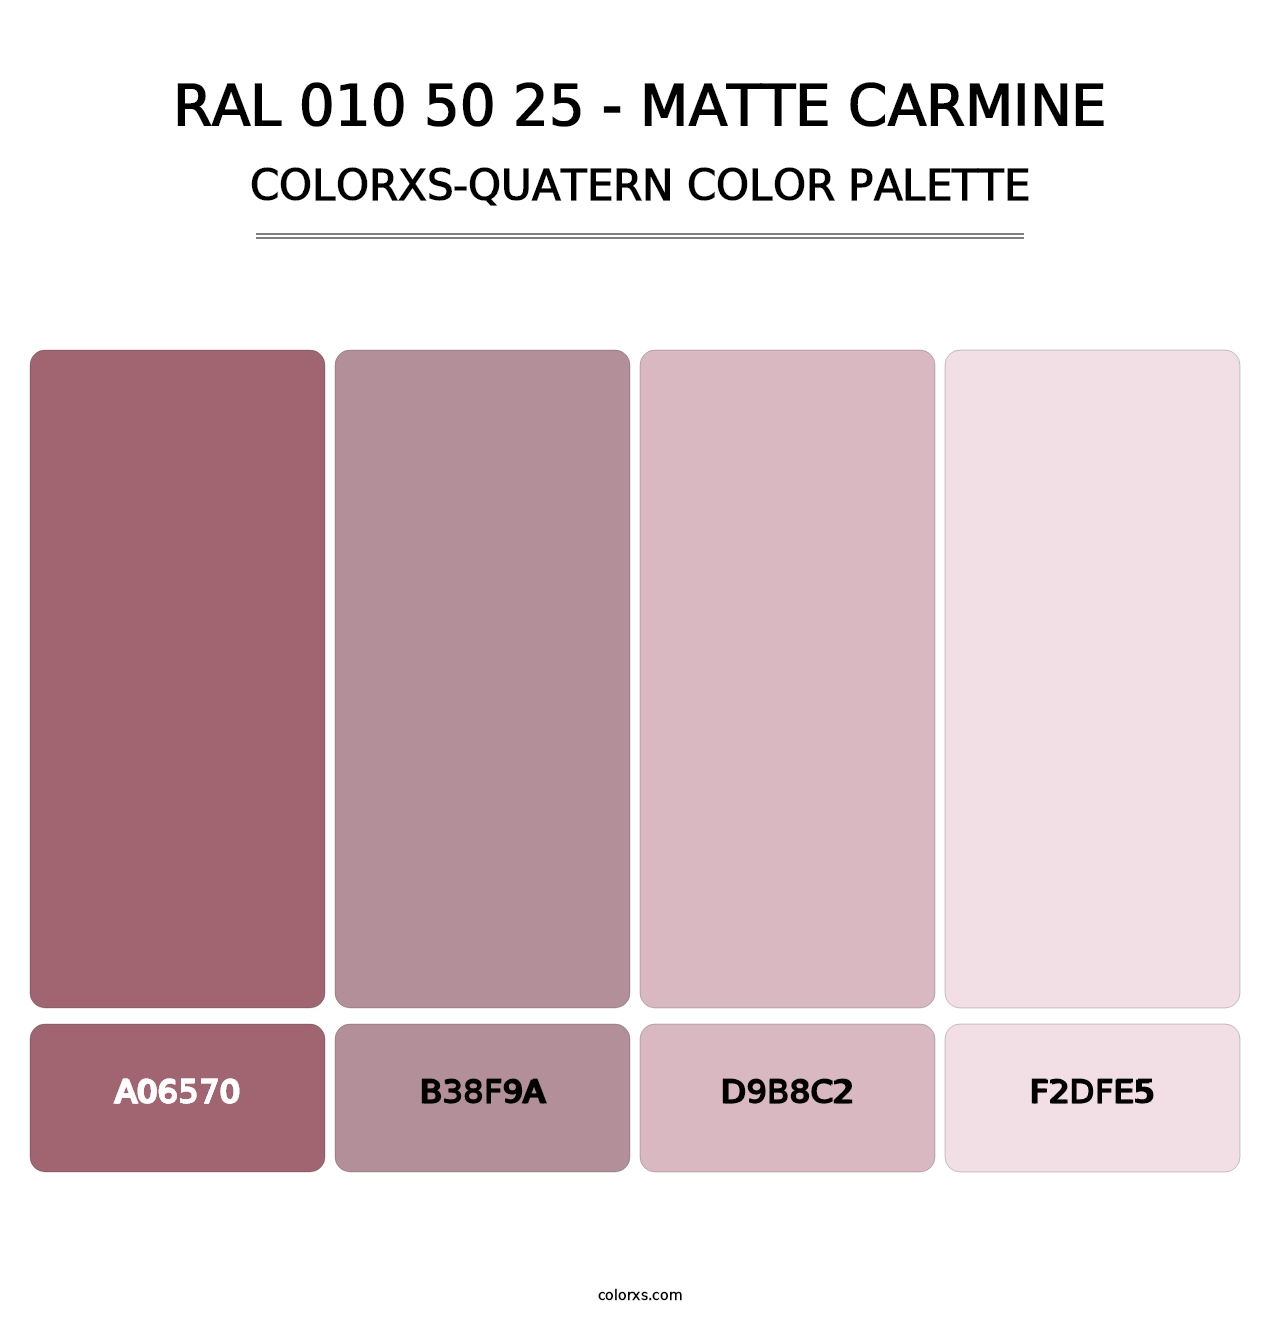 RAL 010 50 25 - Matte Carmine - Colorxs Quatern Palette